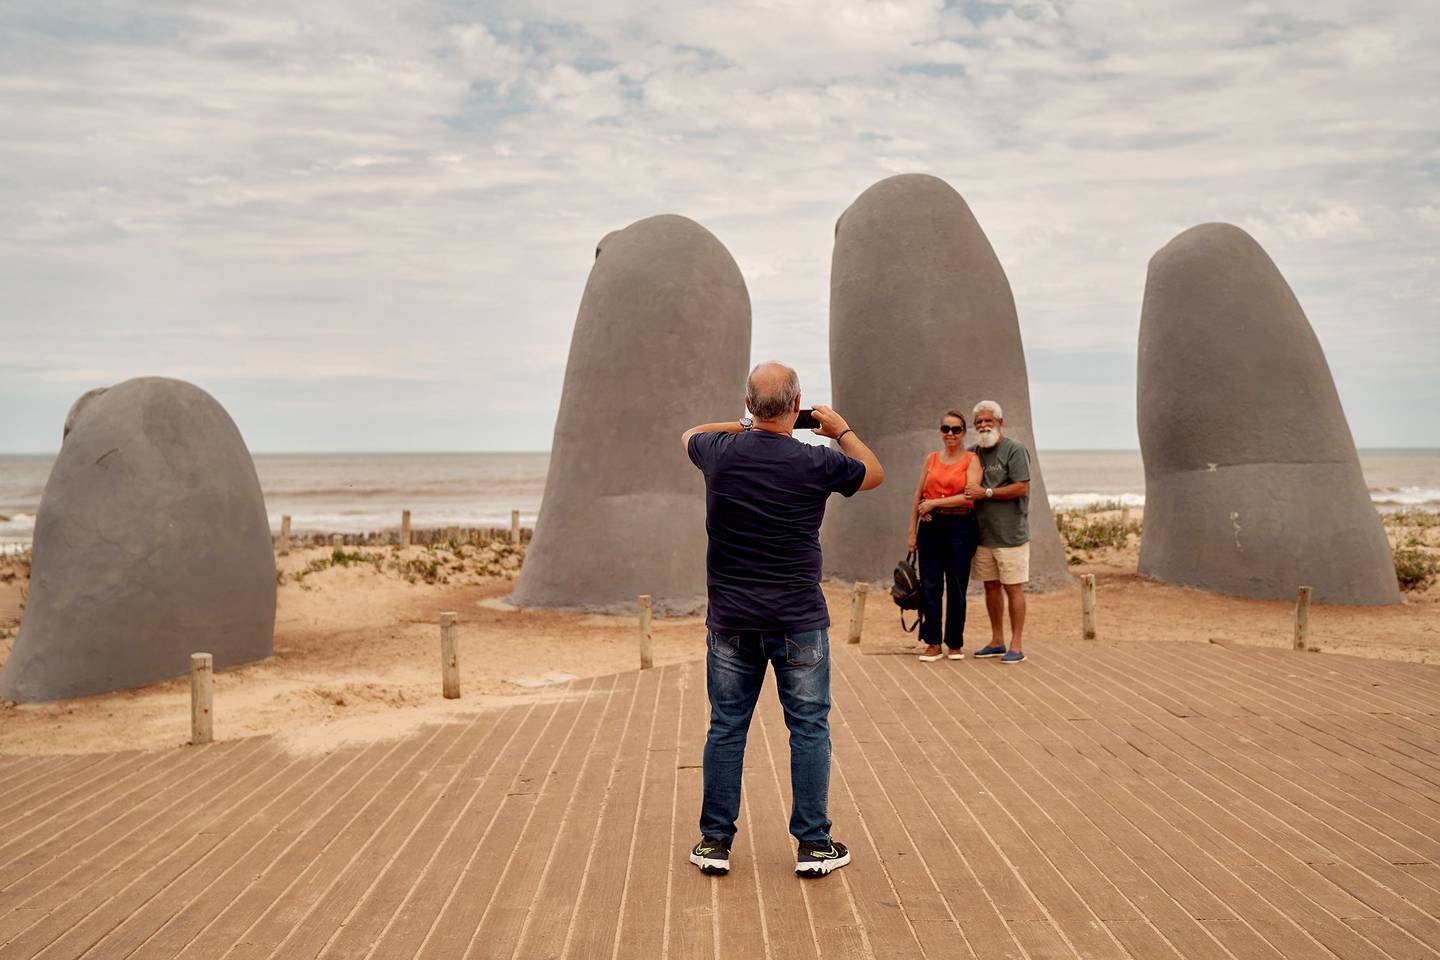 La icónica escultura de Los Dedos, en la península, al inicio de la Playa Brava. Fotografía: Ana Ferreira/Bloombergdfd